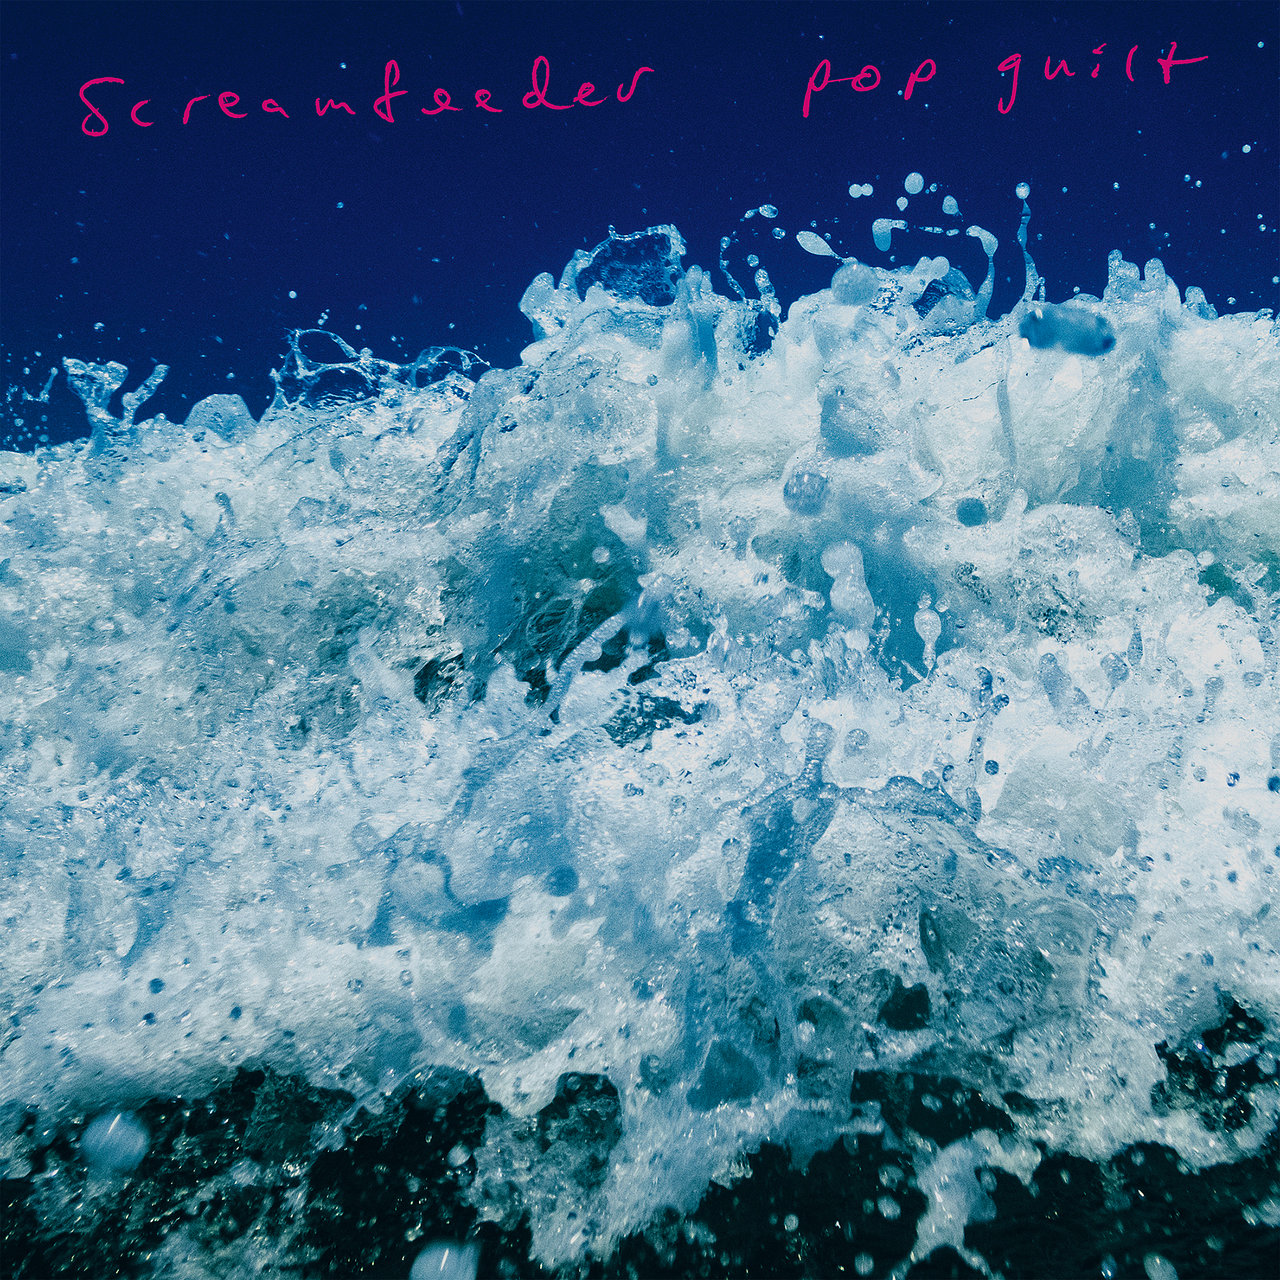 Screamfeeder - Pop Guilt - Album Cover